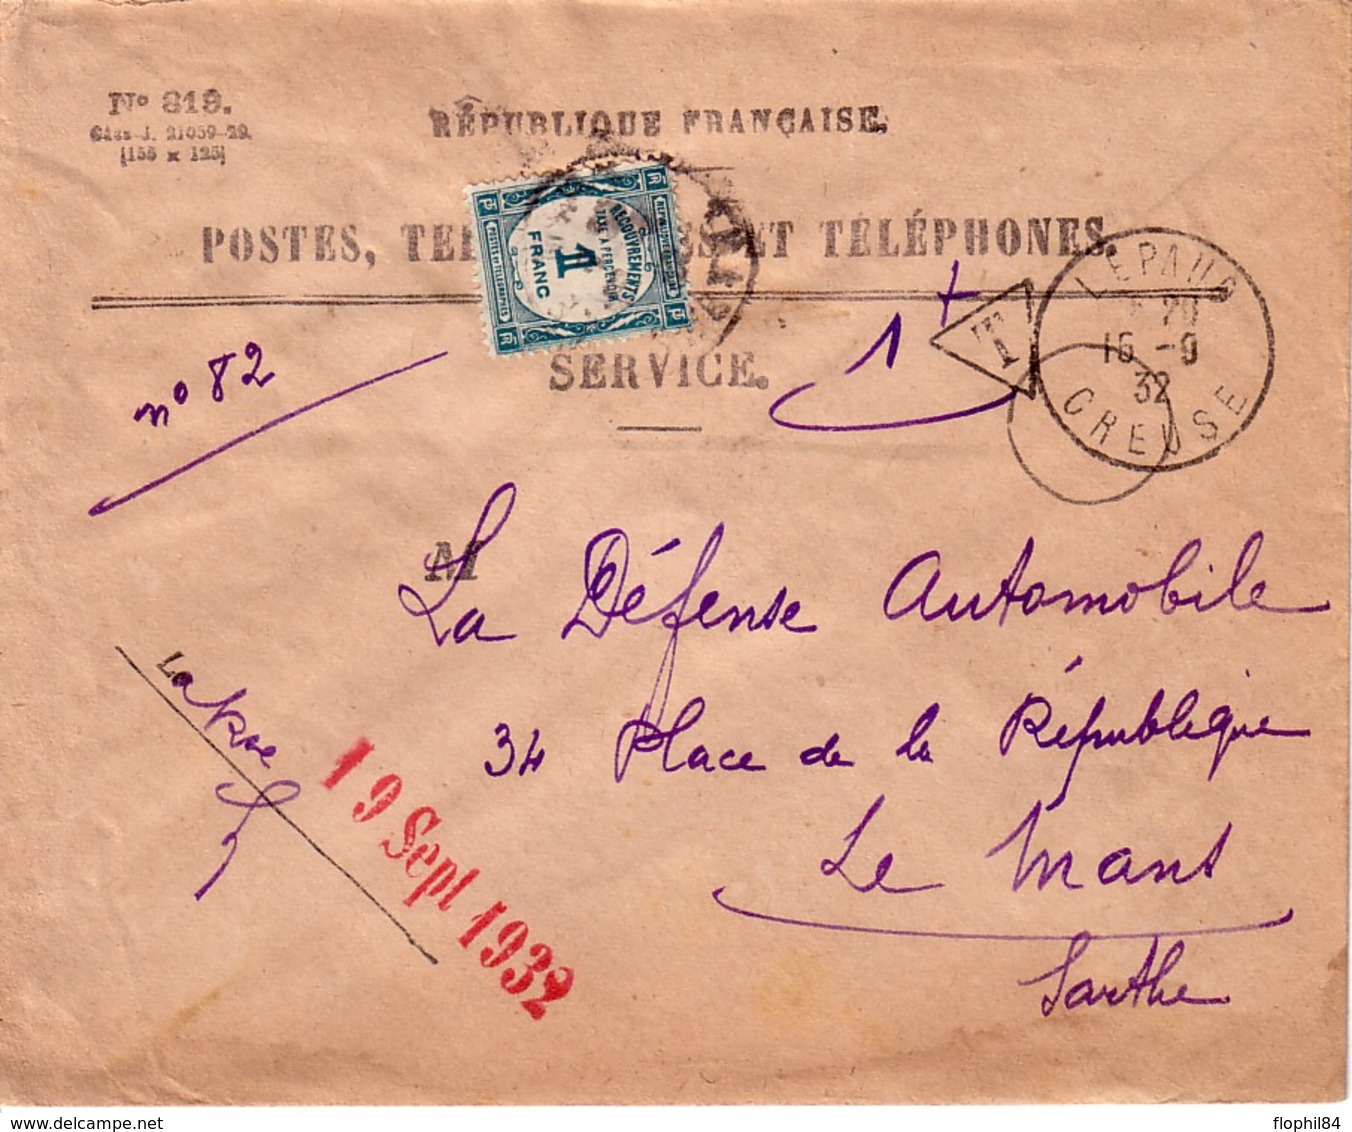 CREUSE - LEPAUD - 16-9-1932 - ENVELOPPE POSTES ET TELEGRAPHES N°819. - 1859-1959 Briefe & Dokumente